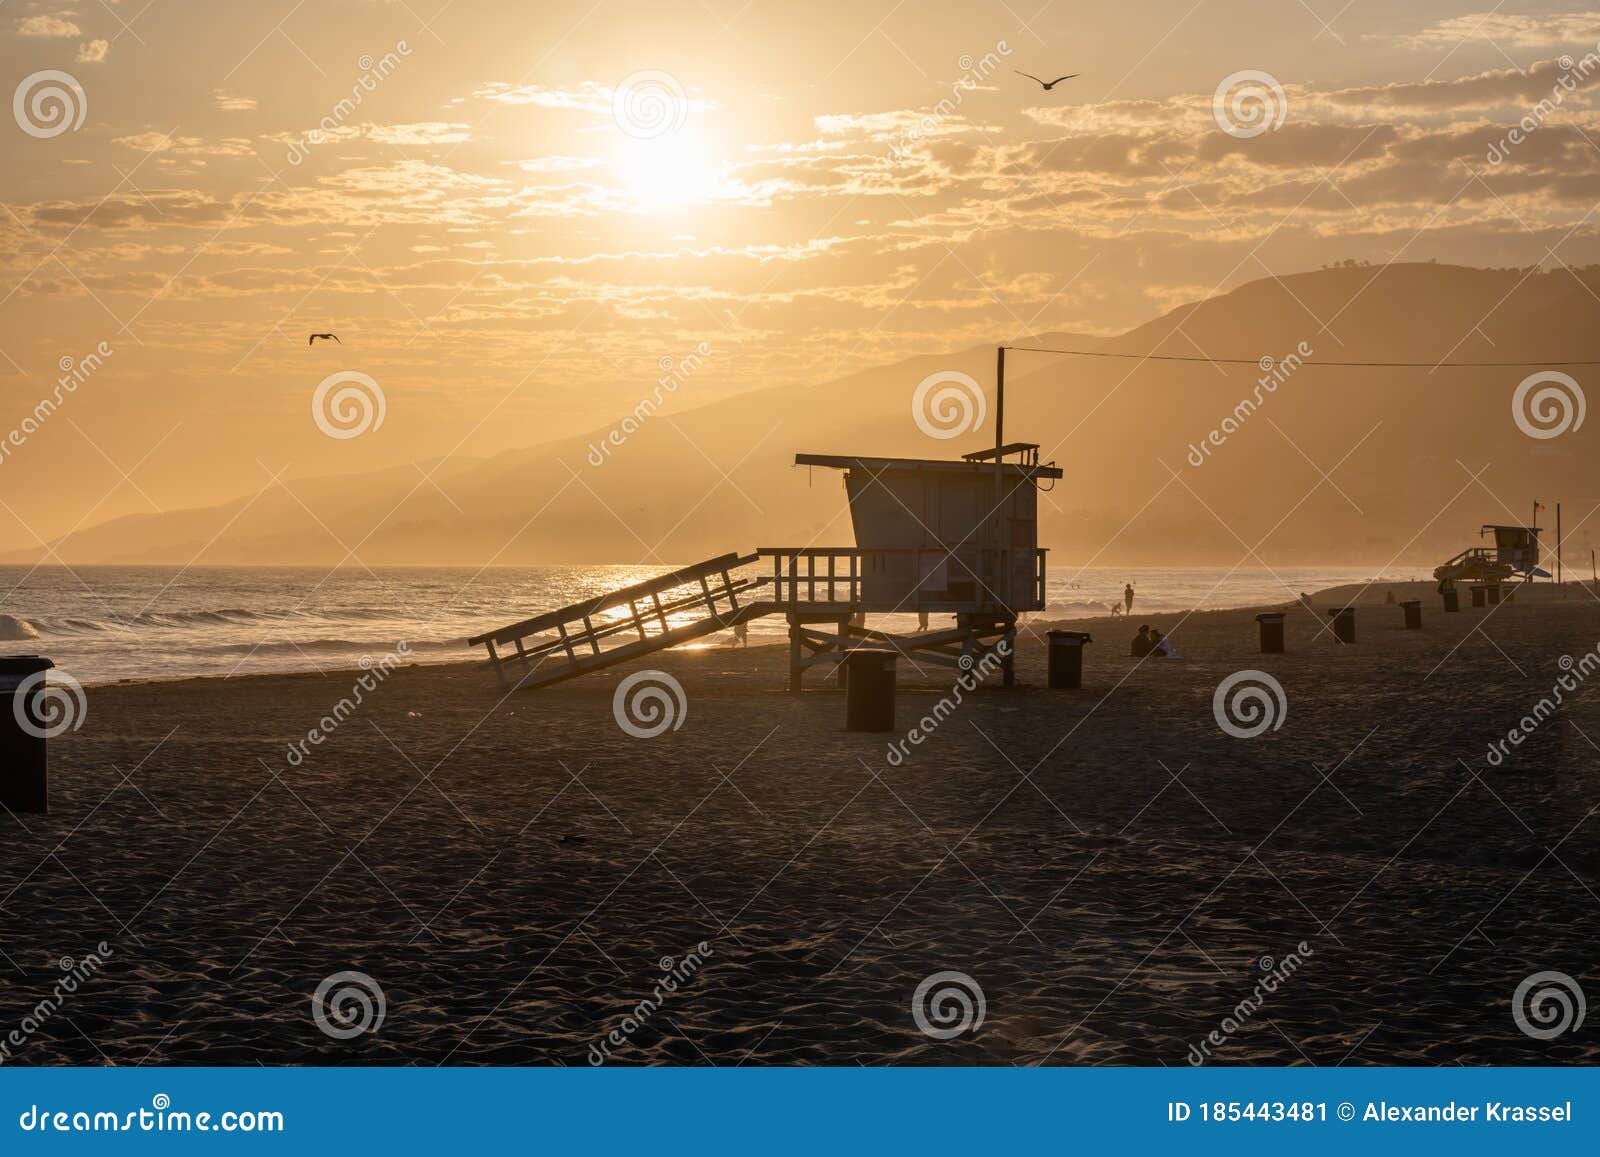 scenic zuma beach vista at sunset, malibu, california